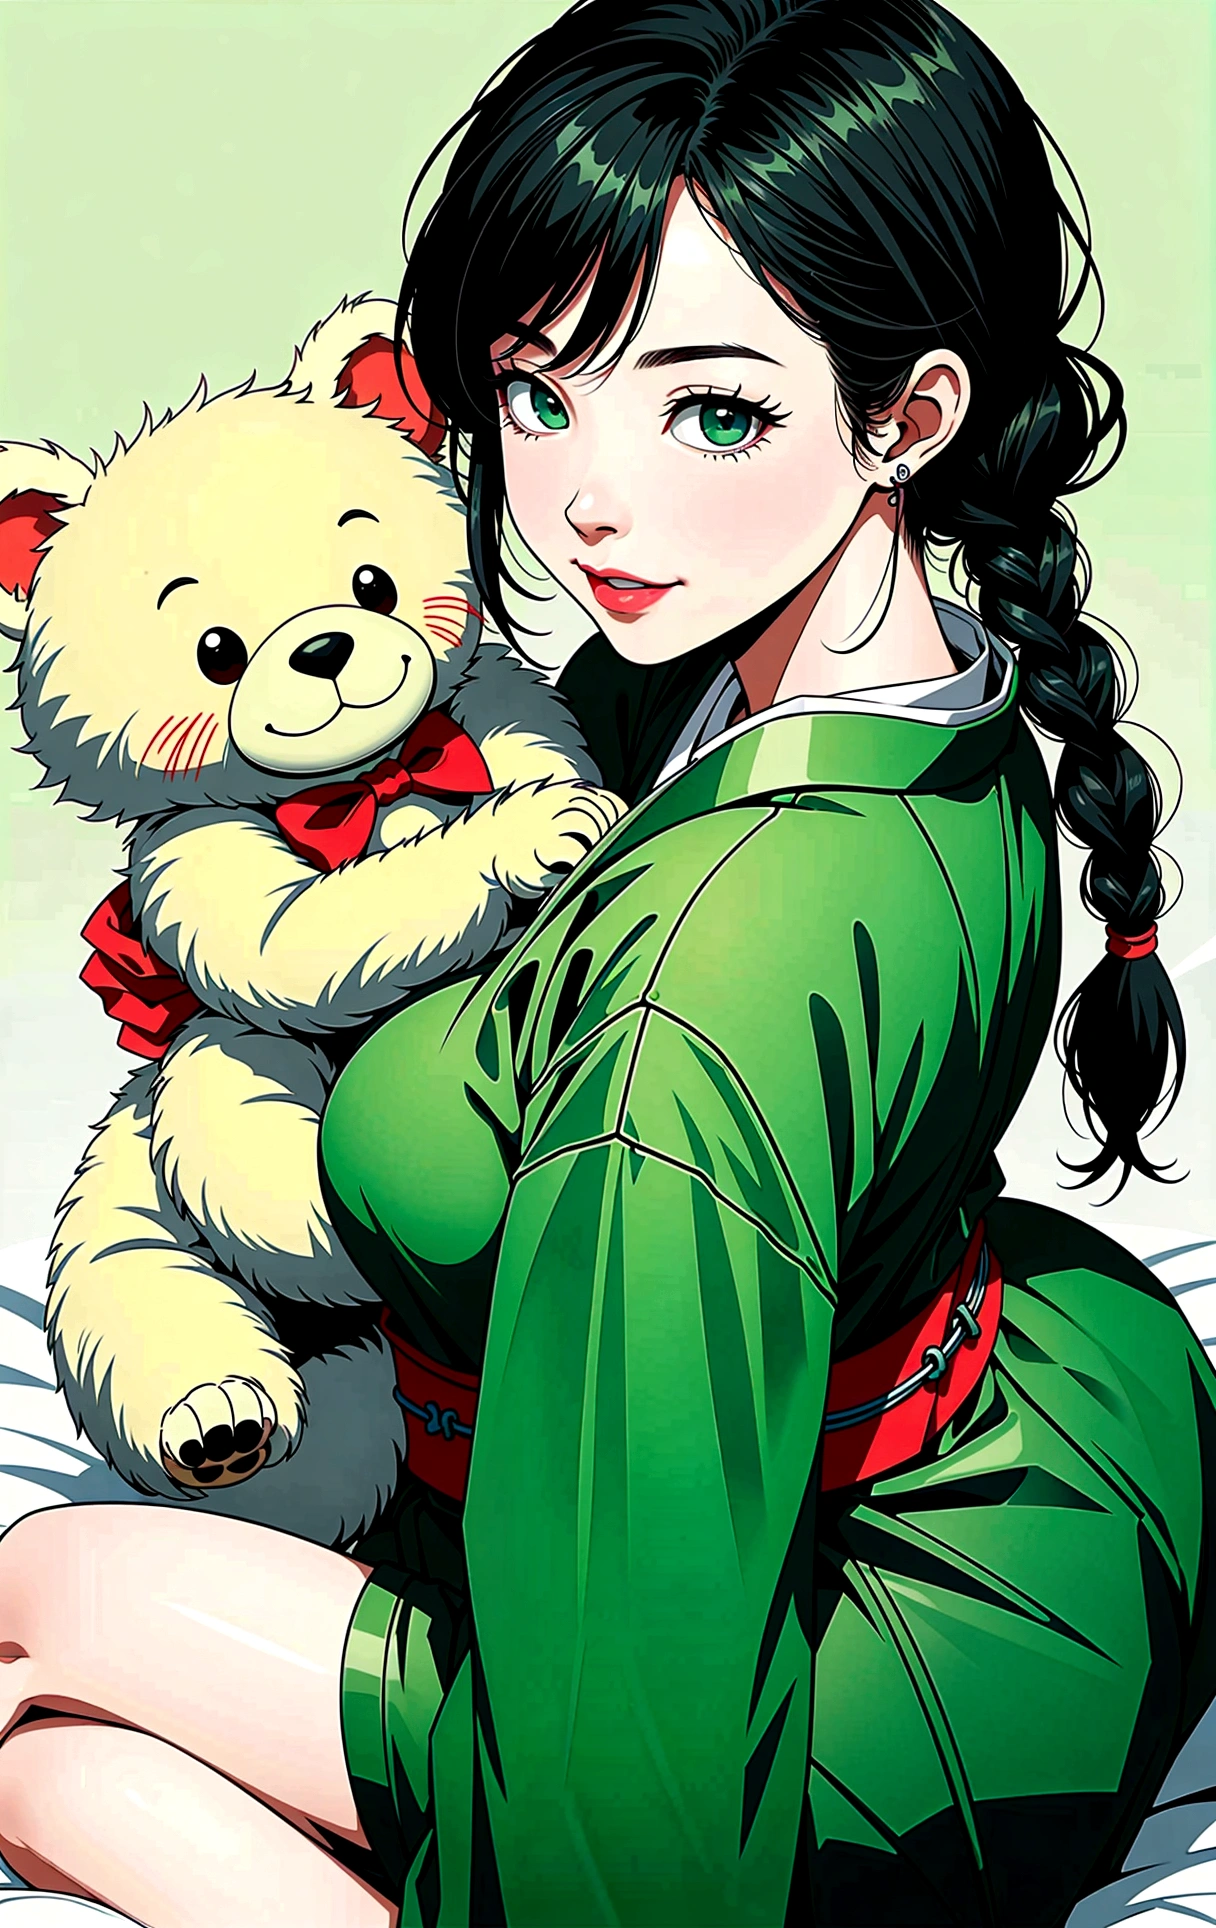 (杰作, 最好的质量), (超高分辨率, 8K-RAW 照片, 真实感, 纺织遮光, 薄轮廓), araffe 成熟的女人 in a kimono, 坐在床上抱着一只泰迪熊, (穿着深绿色丝绸长袍), 深绿色麻, (穿日本和服:1.2, 传统日语, 日本衣服), (贵族浴衣), 穿羽织, (成熟的女人, 熟女:1.5, 28岁, 独自的), (大的e Brust, 乳房下垂, 大的 , 纤腰, 大的 ass, 曲线身材), (中等长度的头发, 头发遮住一只眼睛, 不对称头发, 低扎辫子), (聪明的学生, 细致的眼睛, 非常详细的脸), 秀色可餐, (悲伤的微笑), (向下看:1.3), (动态角度, 从上面), (正确的解剖学:1.5, 右手), (理想的身材比例),